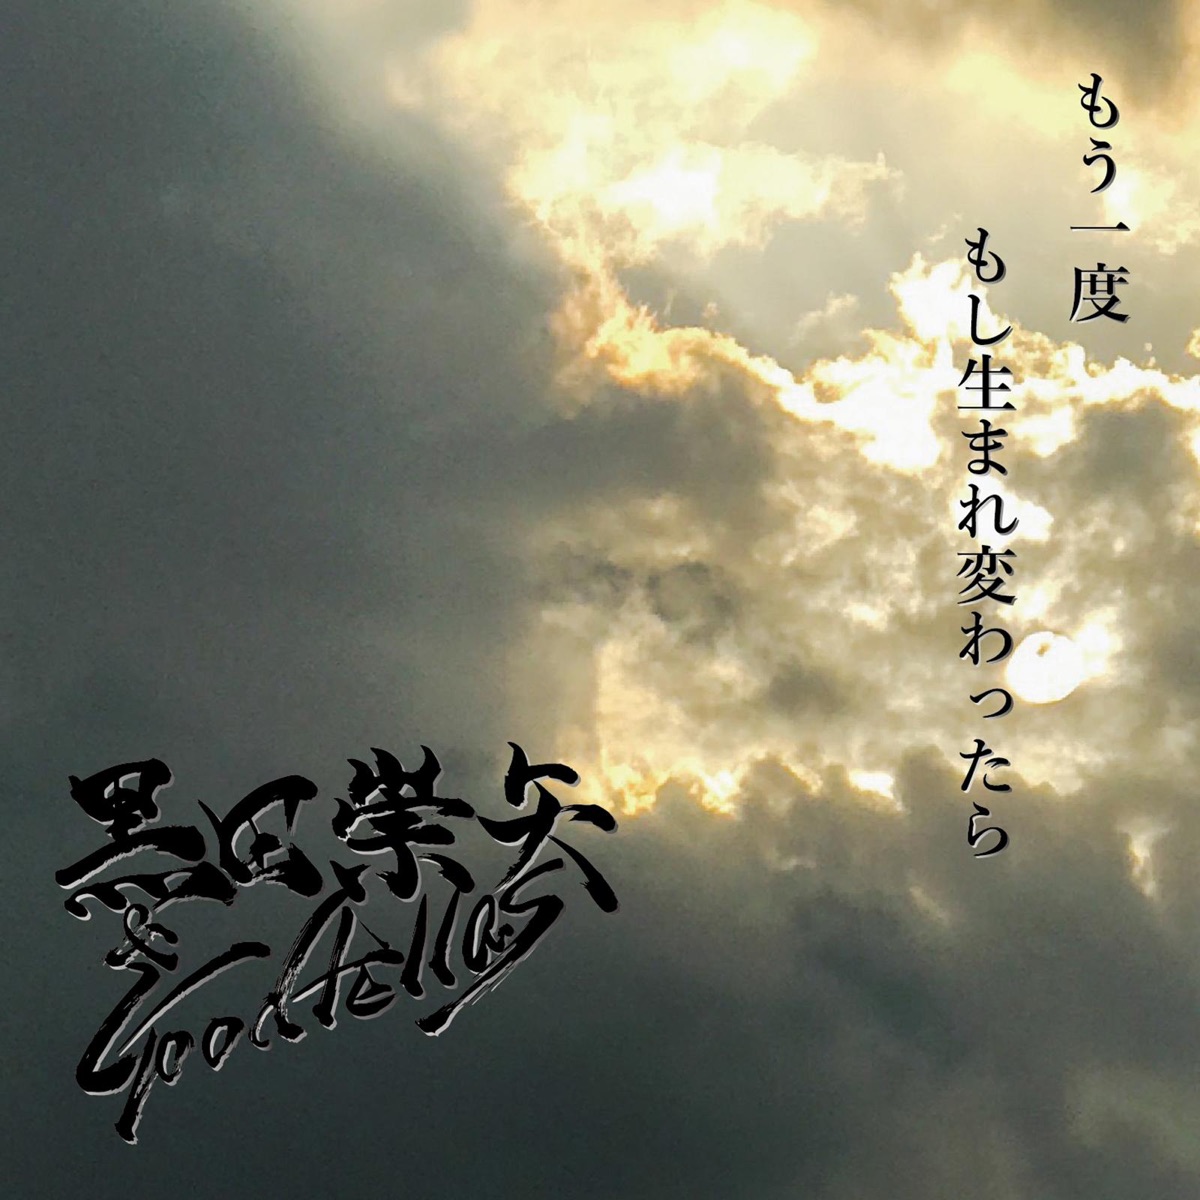 Ryu Ga Gotoku Kazuma Kiryu Karaoke All Time Best Collection CD